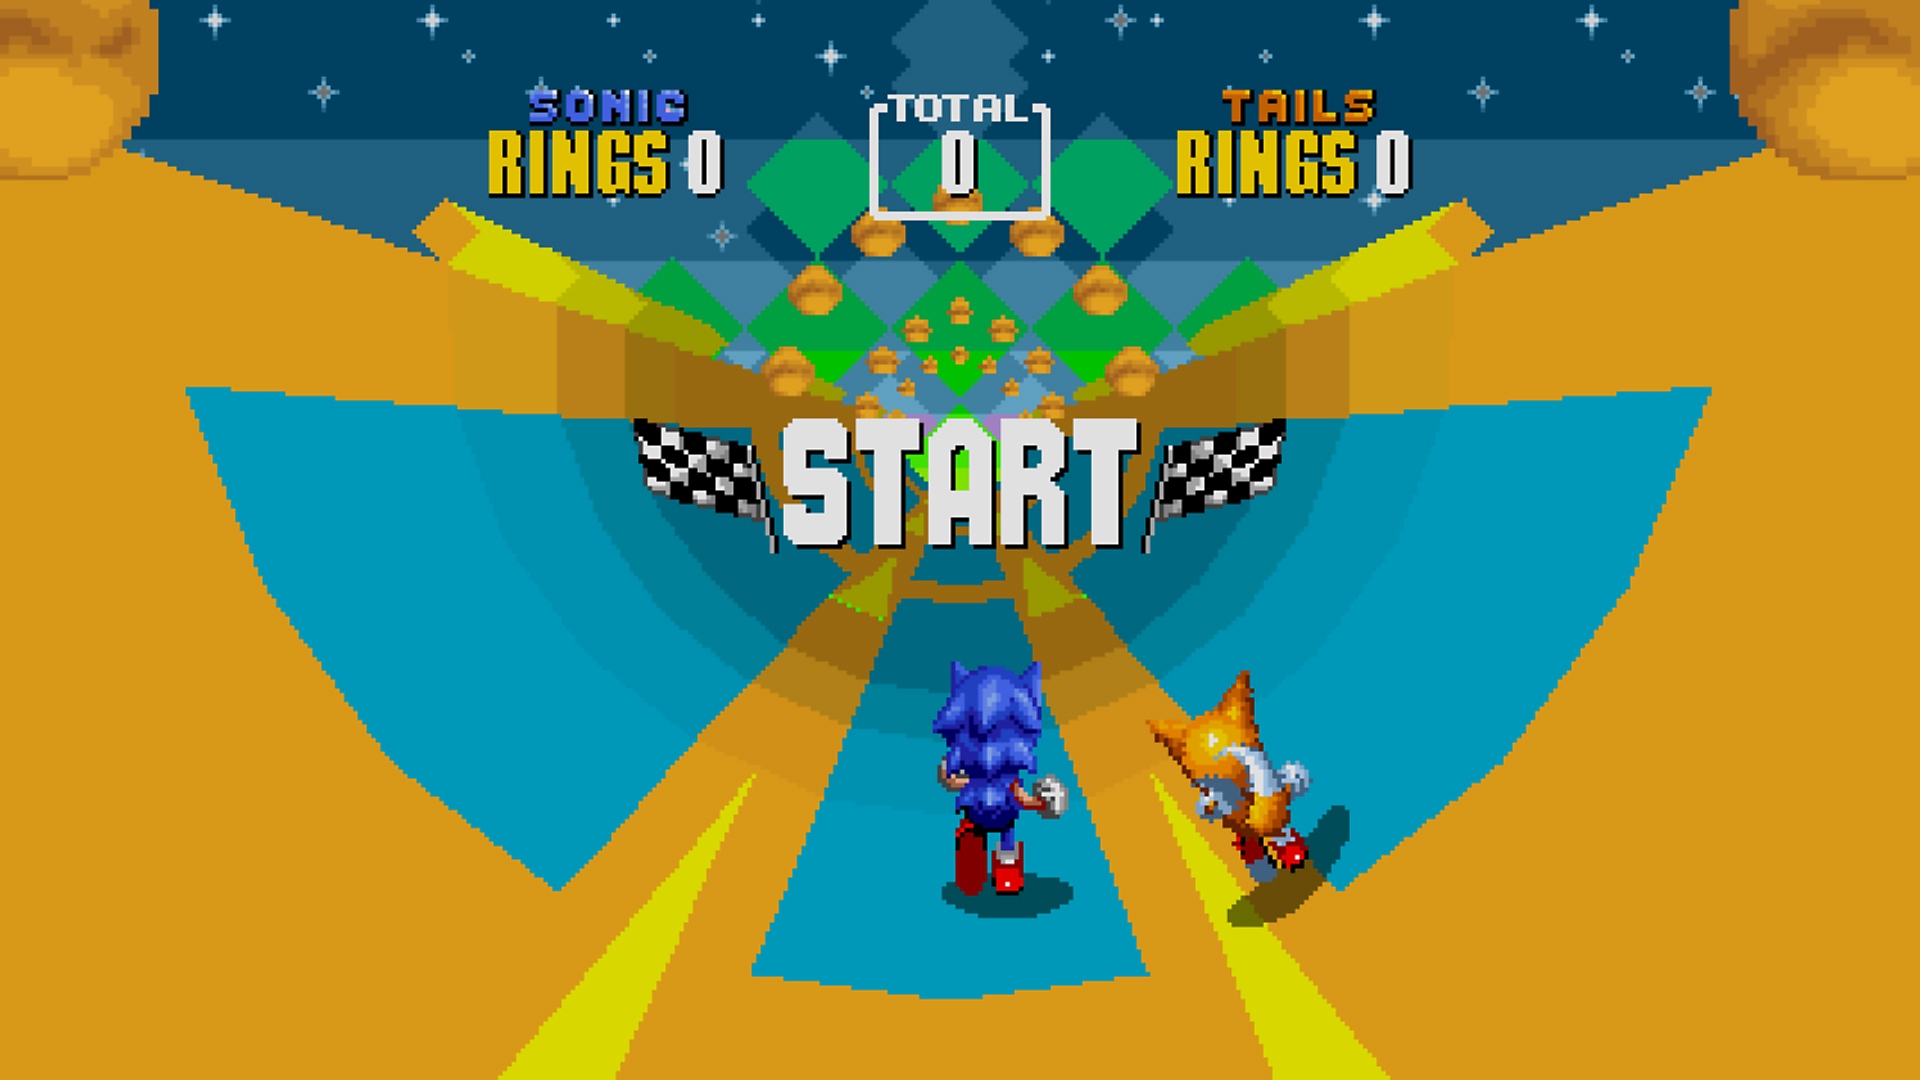 Capture d'écran de Sonic Origins montrant Sonic et Tails courant dans un niveau